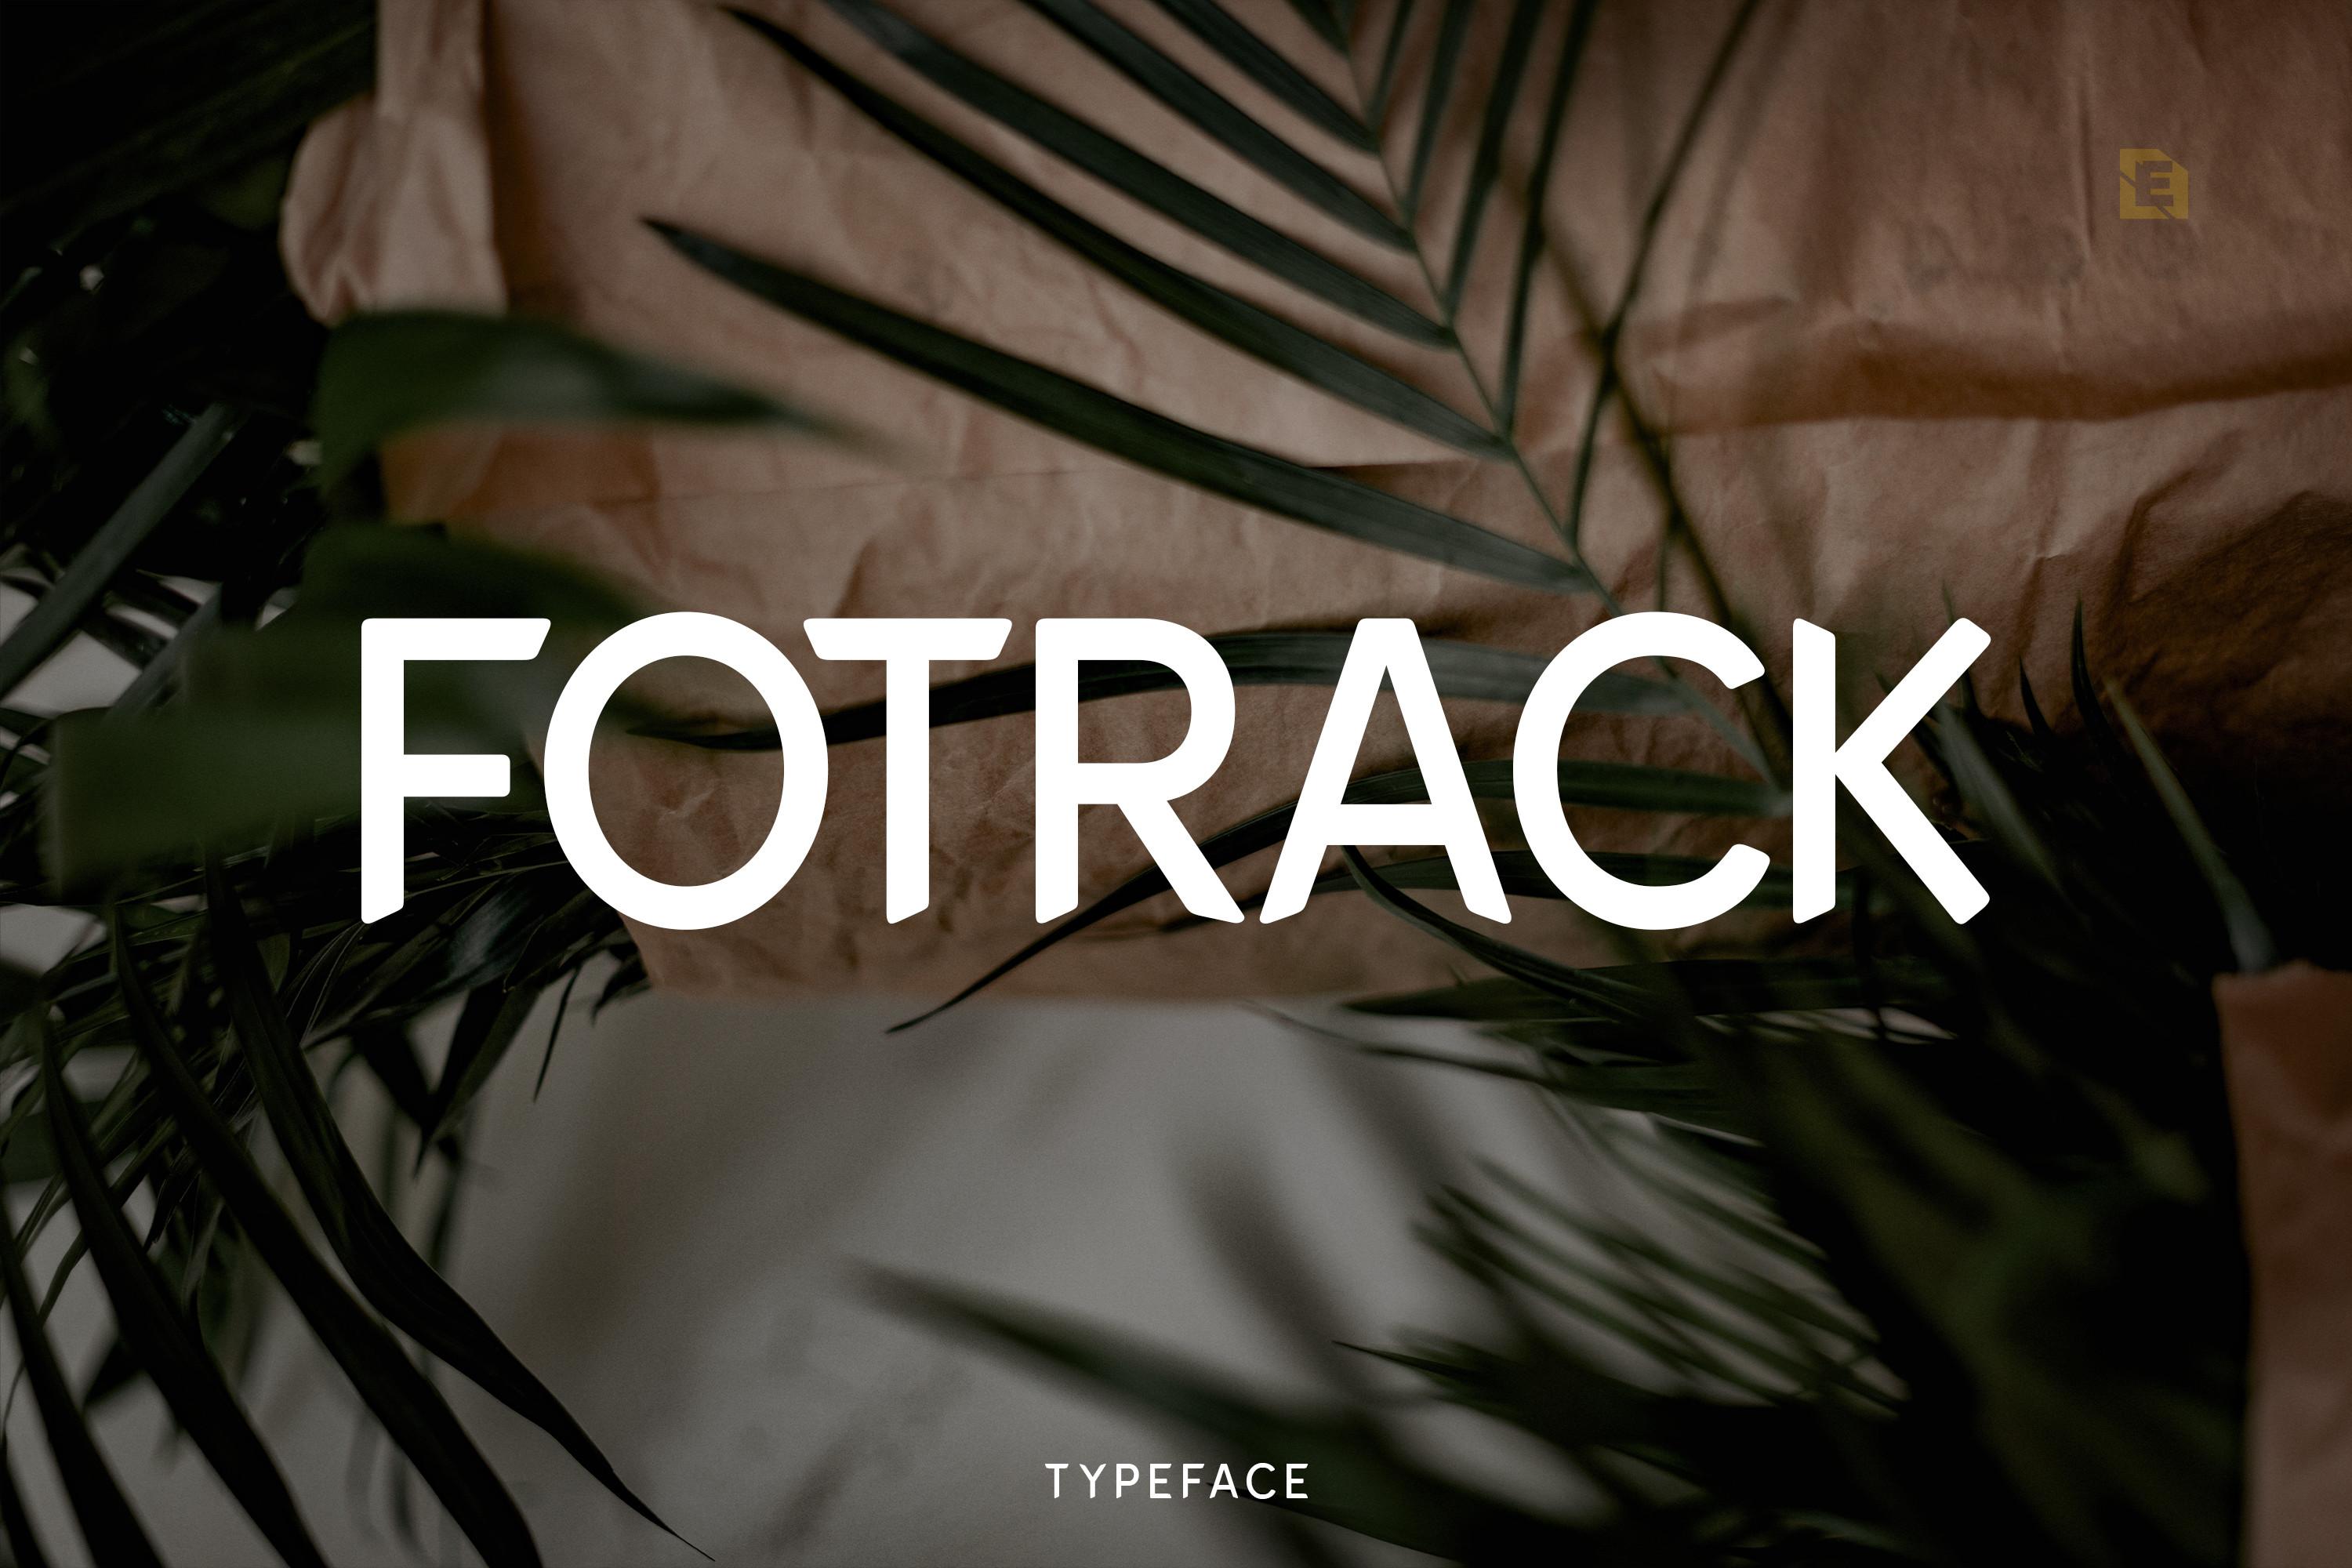 Fotrack Typeface Font